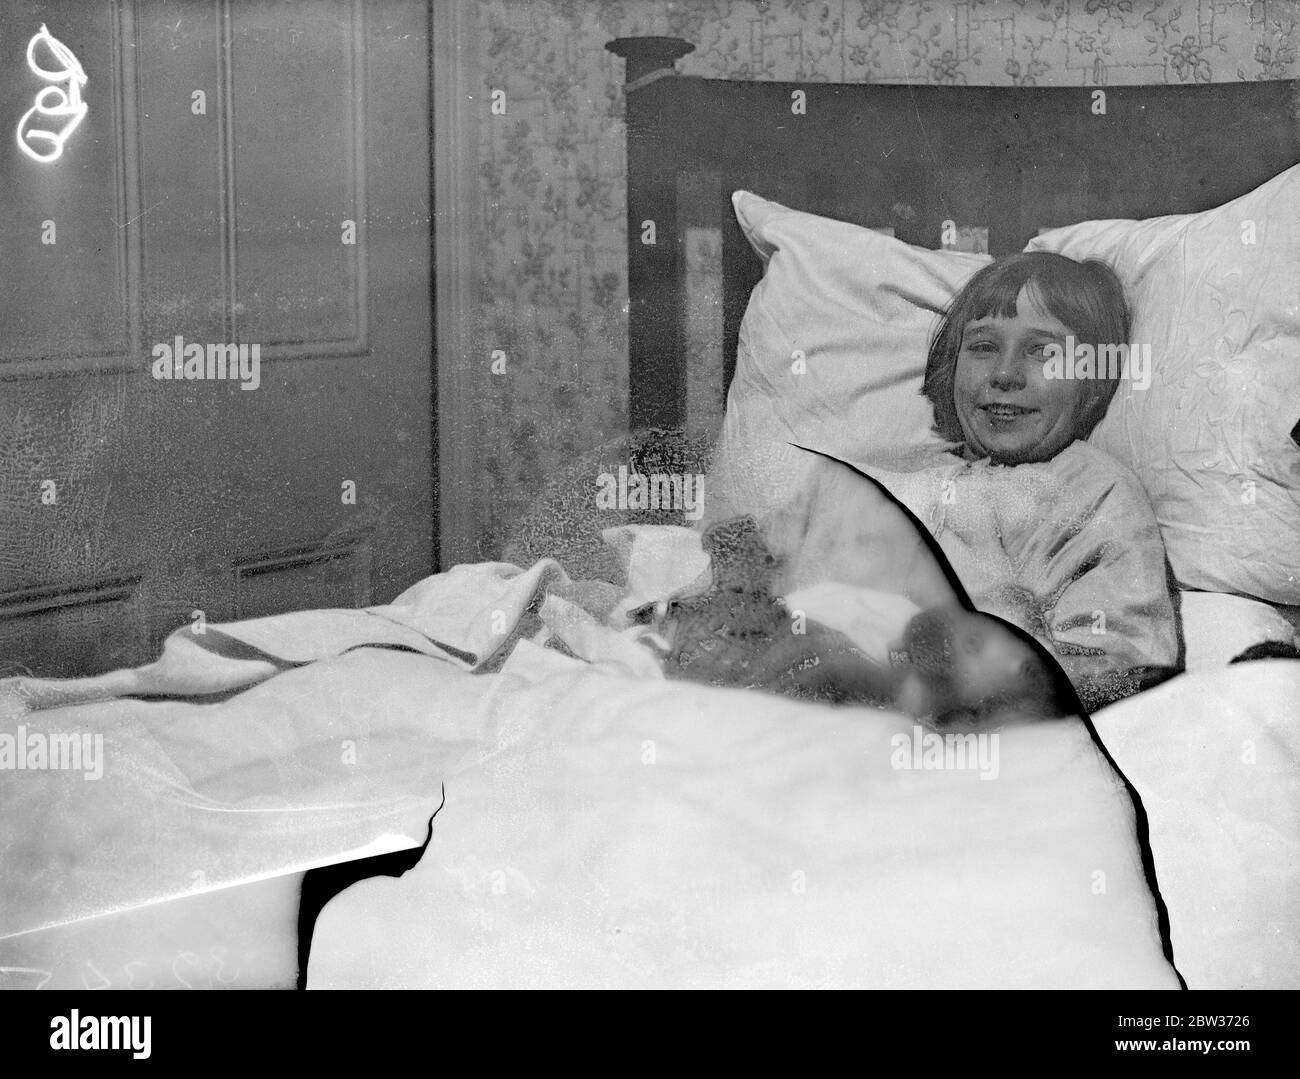 London Mädchen im Bett von Einbrechern gesperrt. Doreen Collier, die zehnjährige Tochter von Frau Collier von Palmers Green, London, wurde im Schlafzimmer ihres Hauses eingesperrt, als Einbrecher das Haus betraten und durchwühlten, indem sie eine große Menge an Schmuck nahmen. Foto zeigt; kleine Doreen Collier im Schlafzimmer, in dem sie von Einbrechern in Belmont Avenue gefangen genommen wurde, Palmers Green. Dezember 1933 Stockfoto